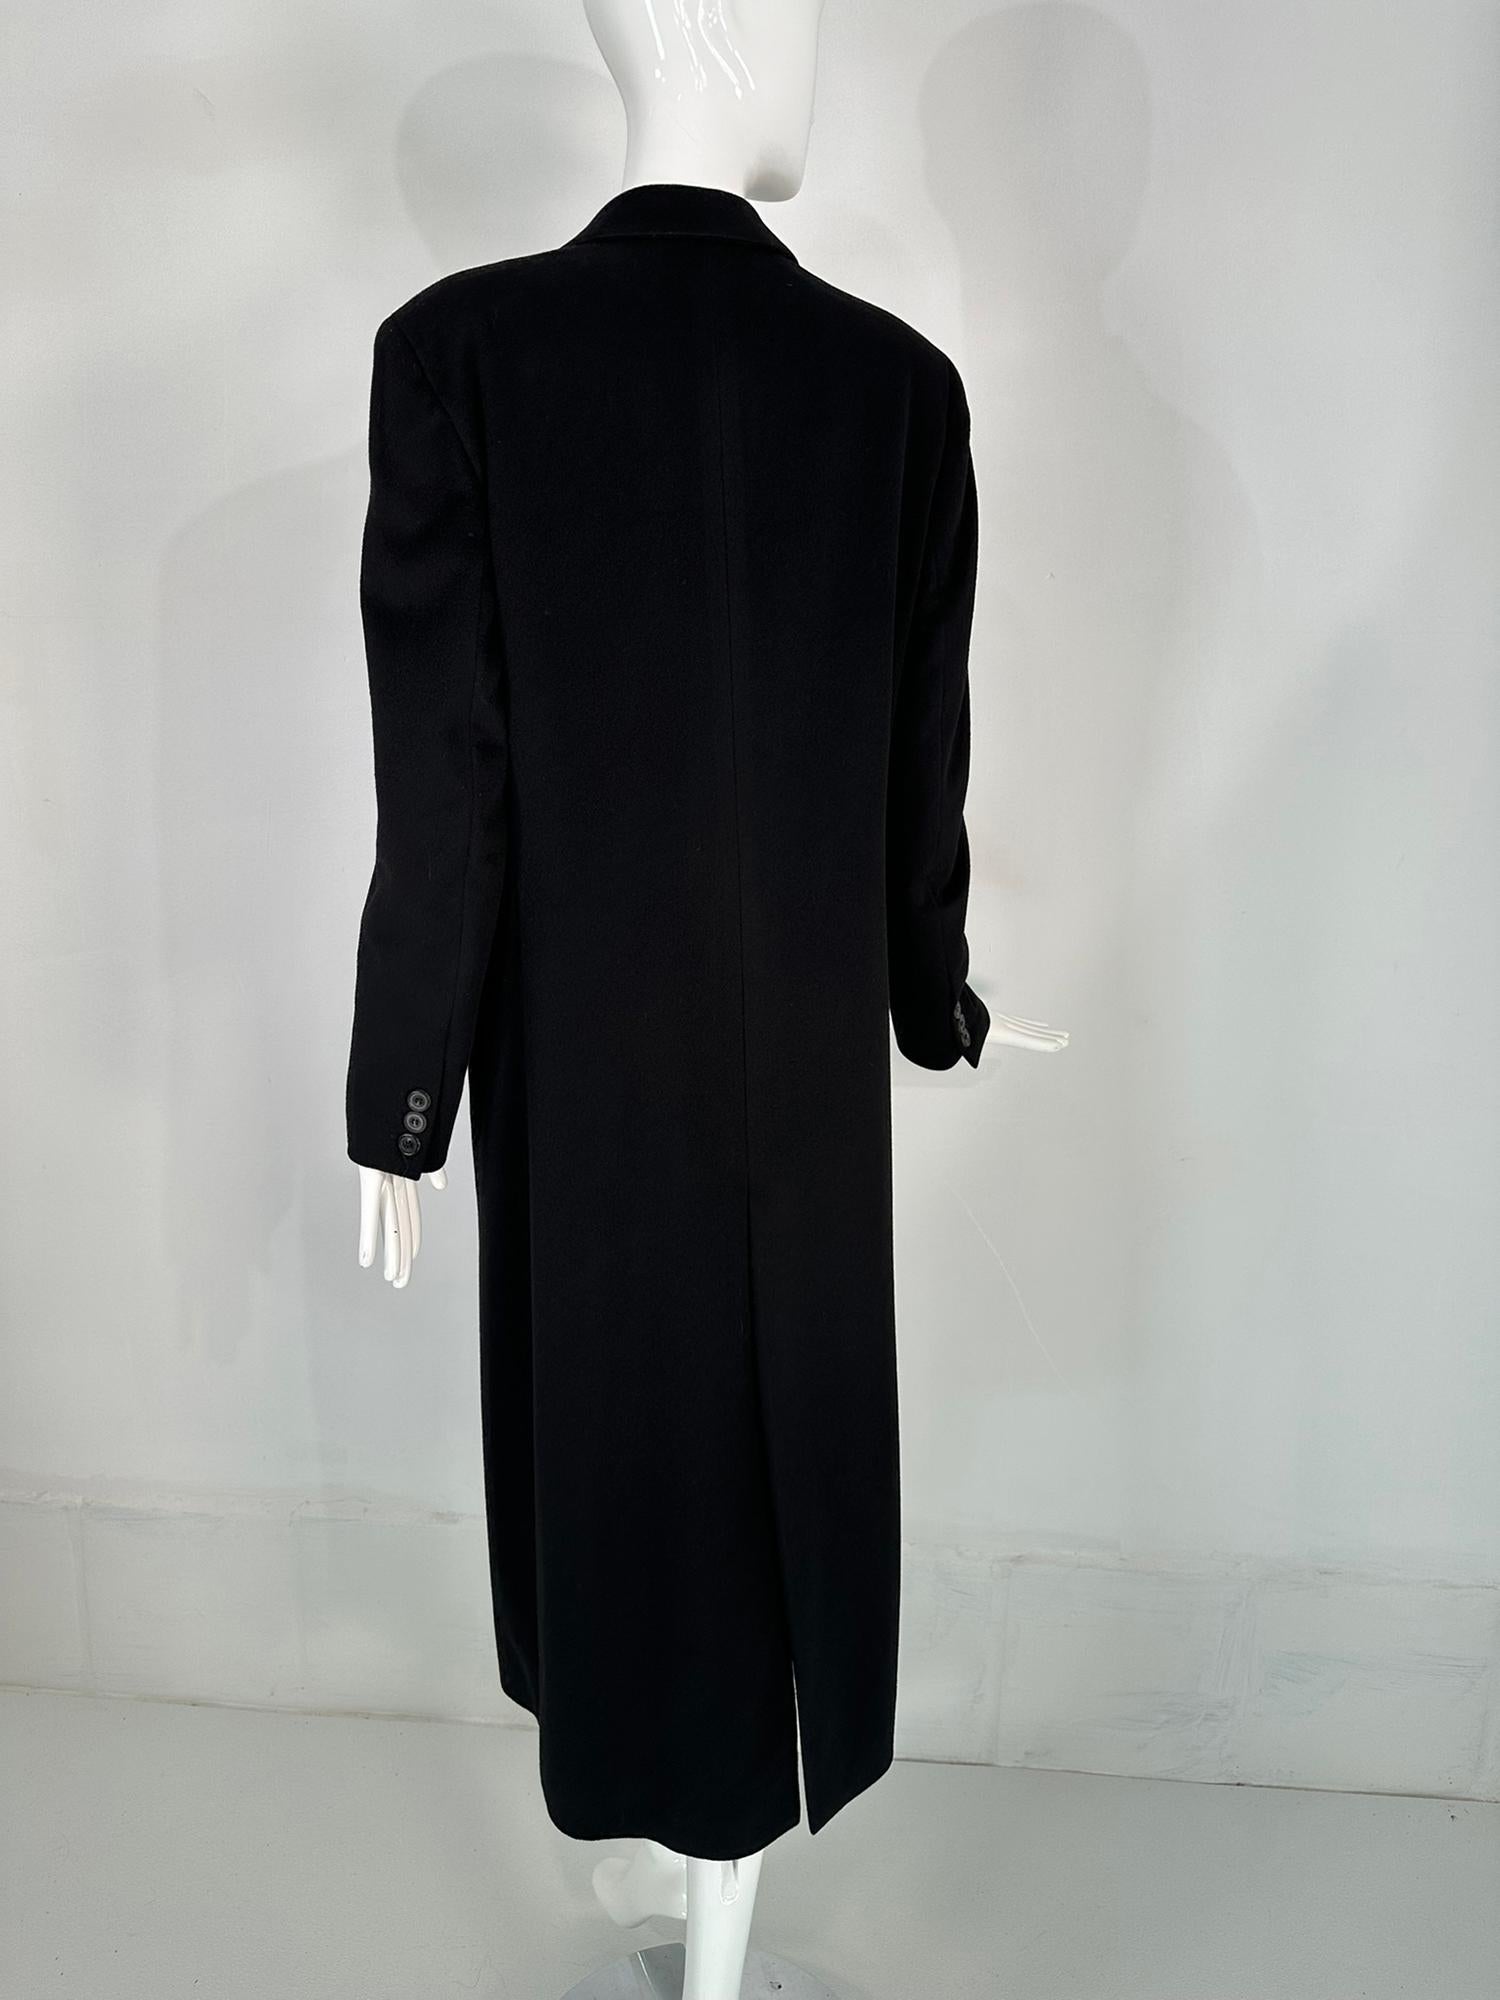 Giorgio Armani Classico Black Label Black Cashmere Double Breasted Winter Coat 4